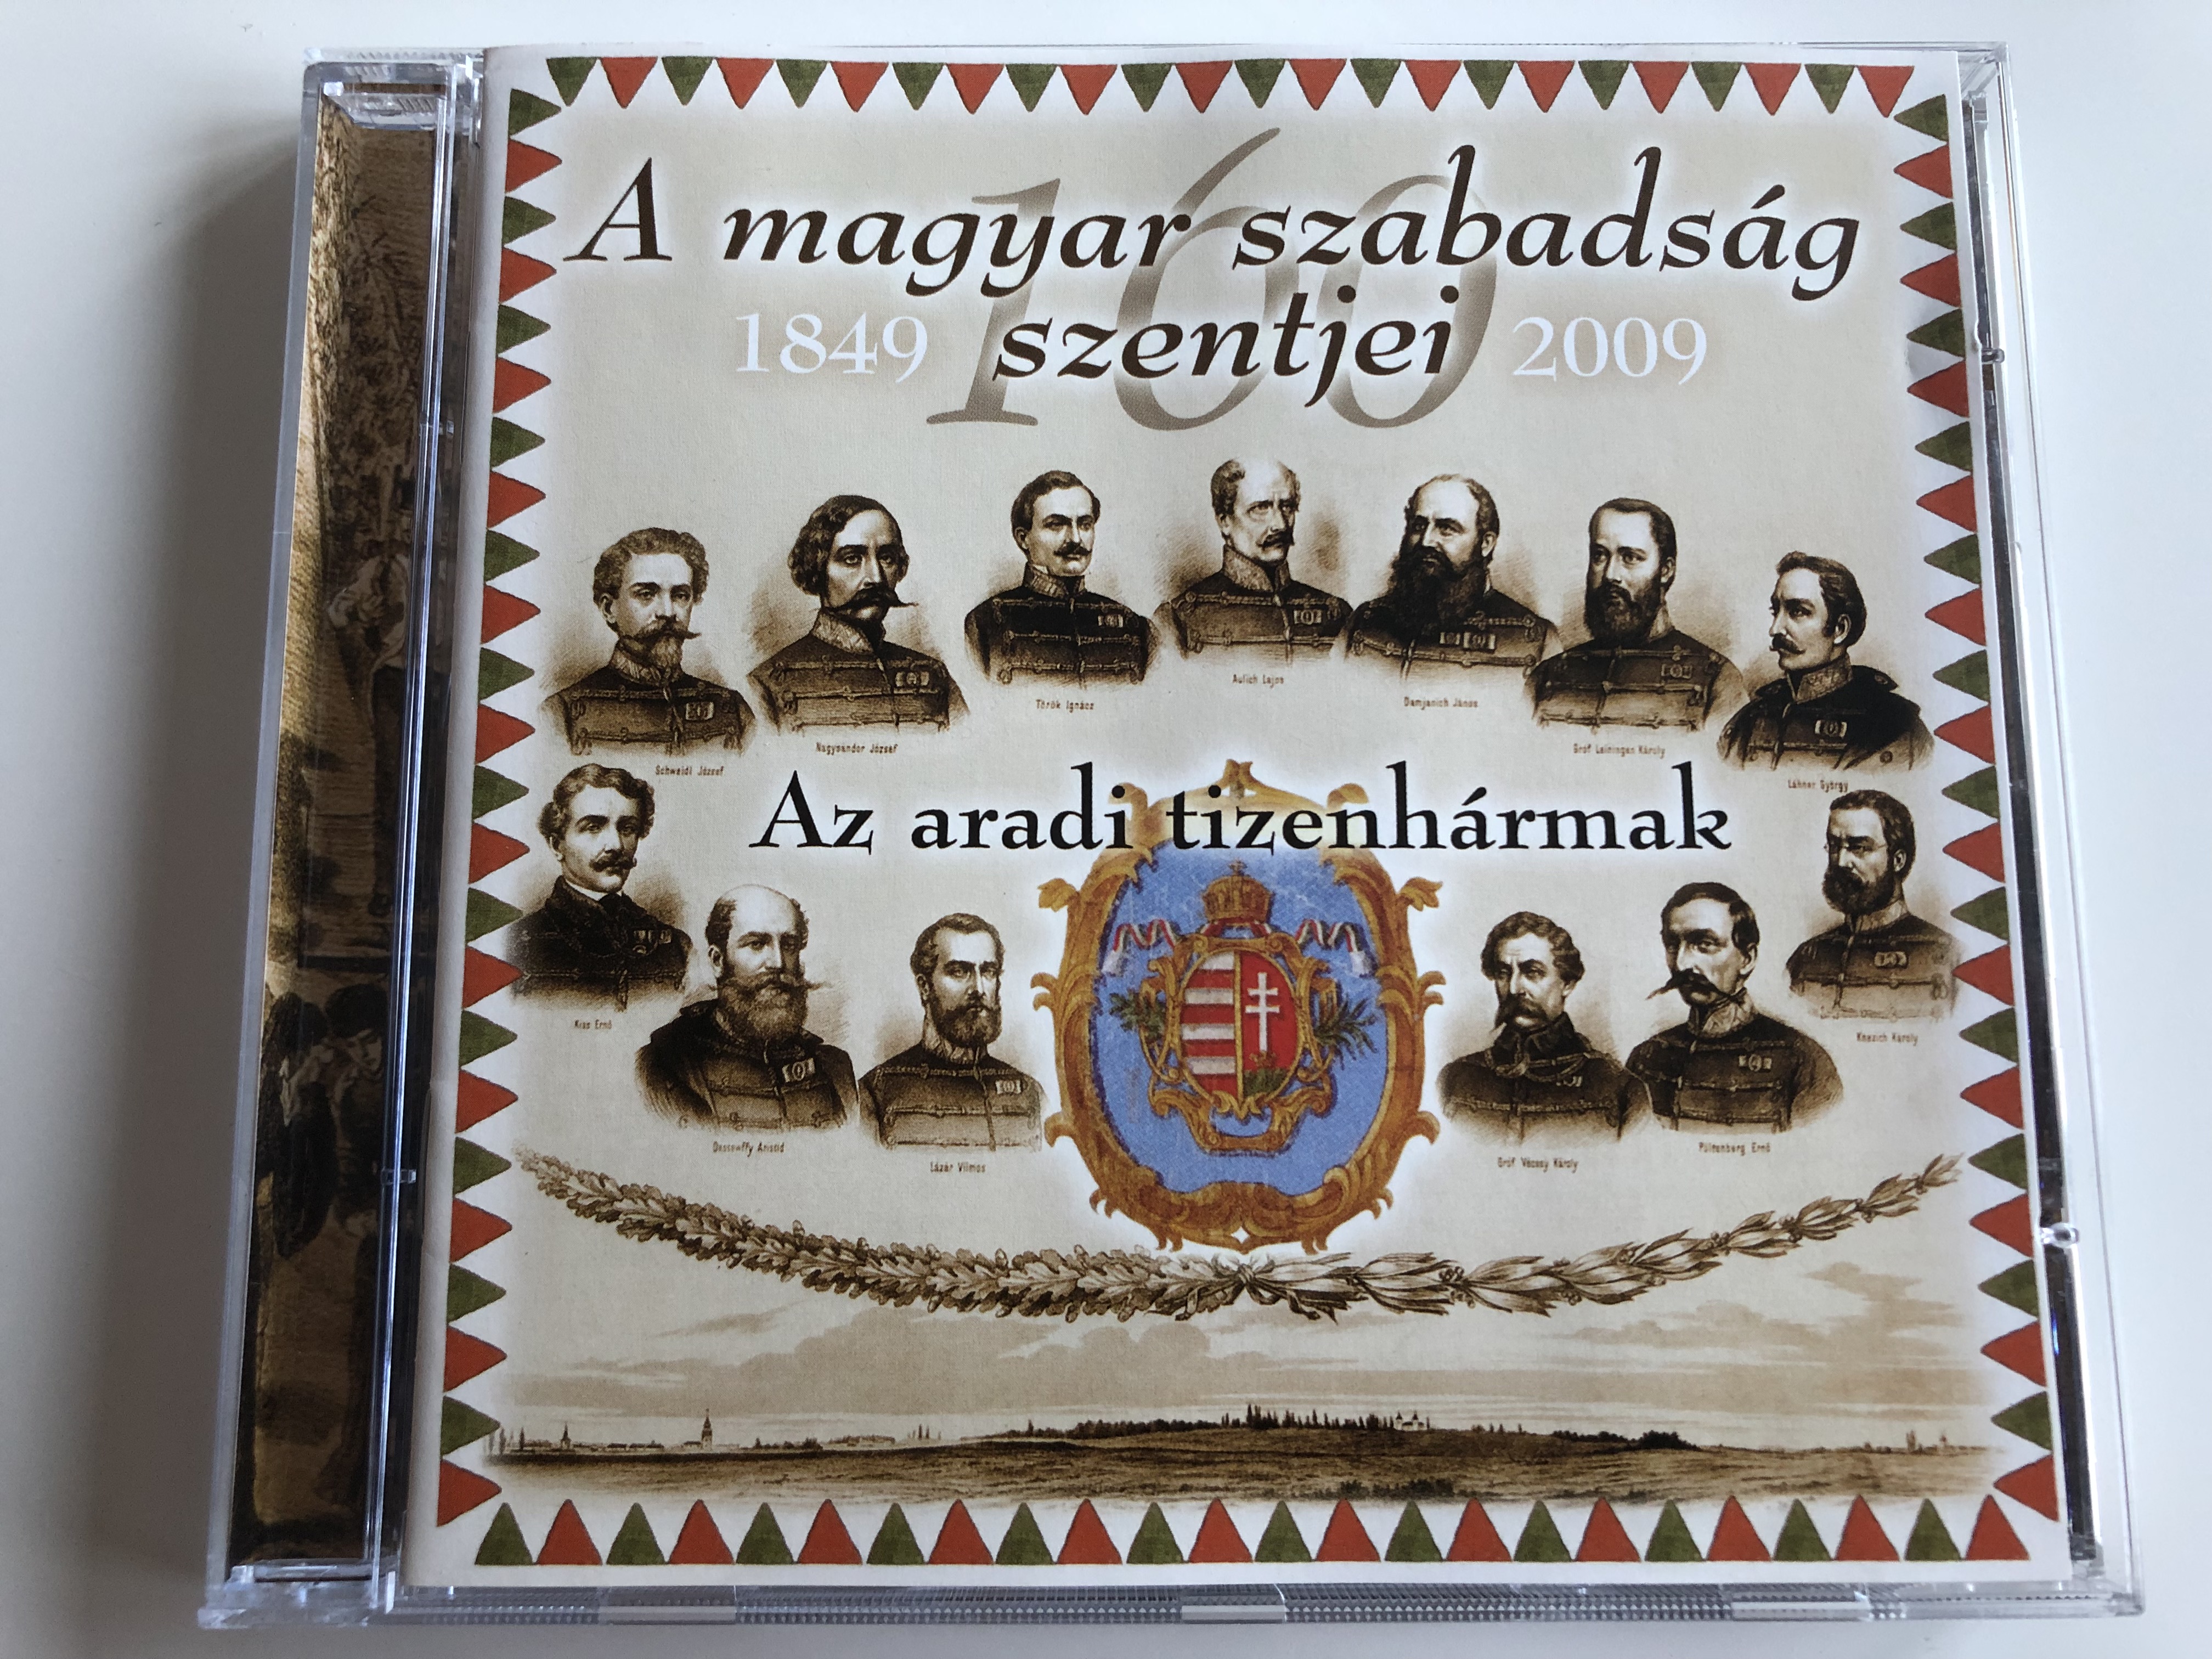 a-magyar-szabads-g-szentjei-az-aradi-tizenh-rmak-magyarok-vil-gsz-vets-ge-audio-cd-2009-mvszcd-007-1-.jpg